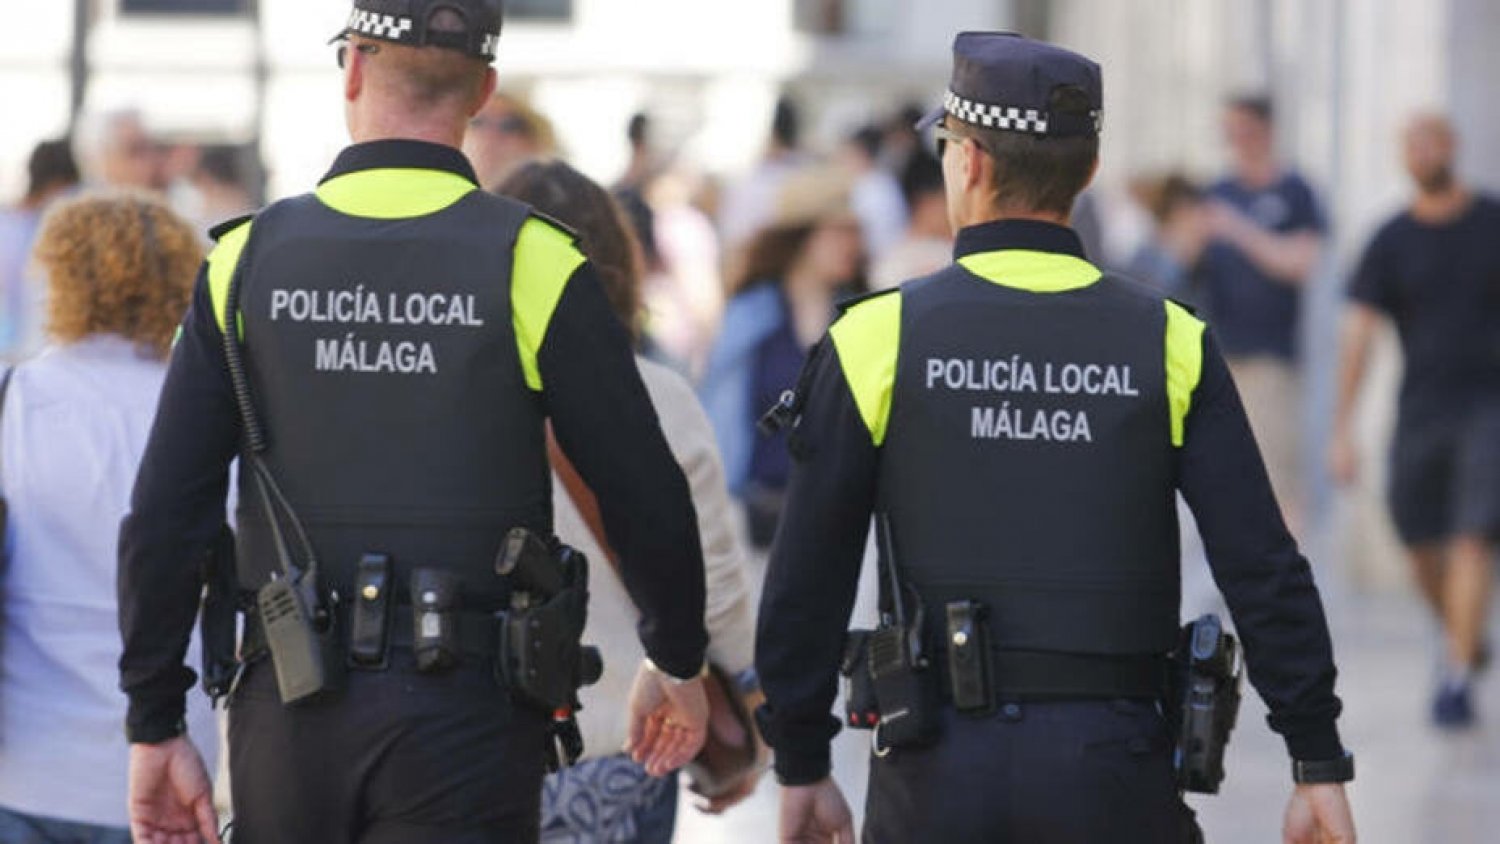 La Policía Local tramita 97 denuncias en materia de control de ruidos y convivencia en la última semana